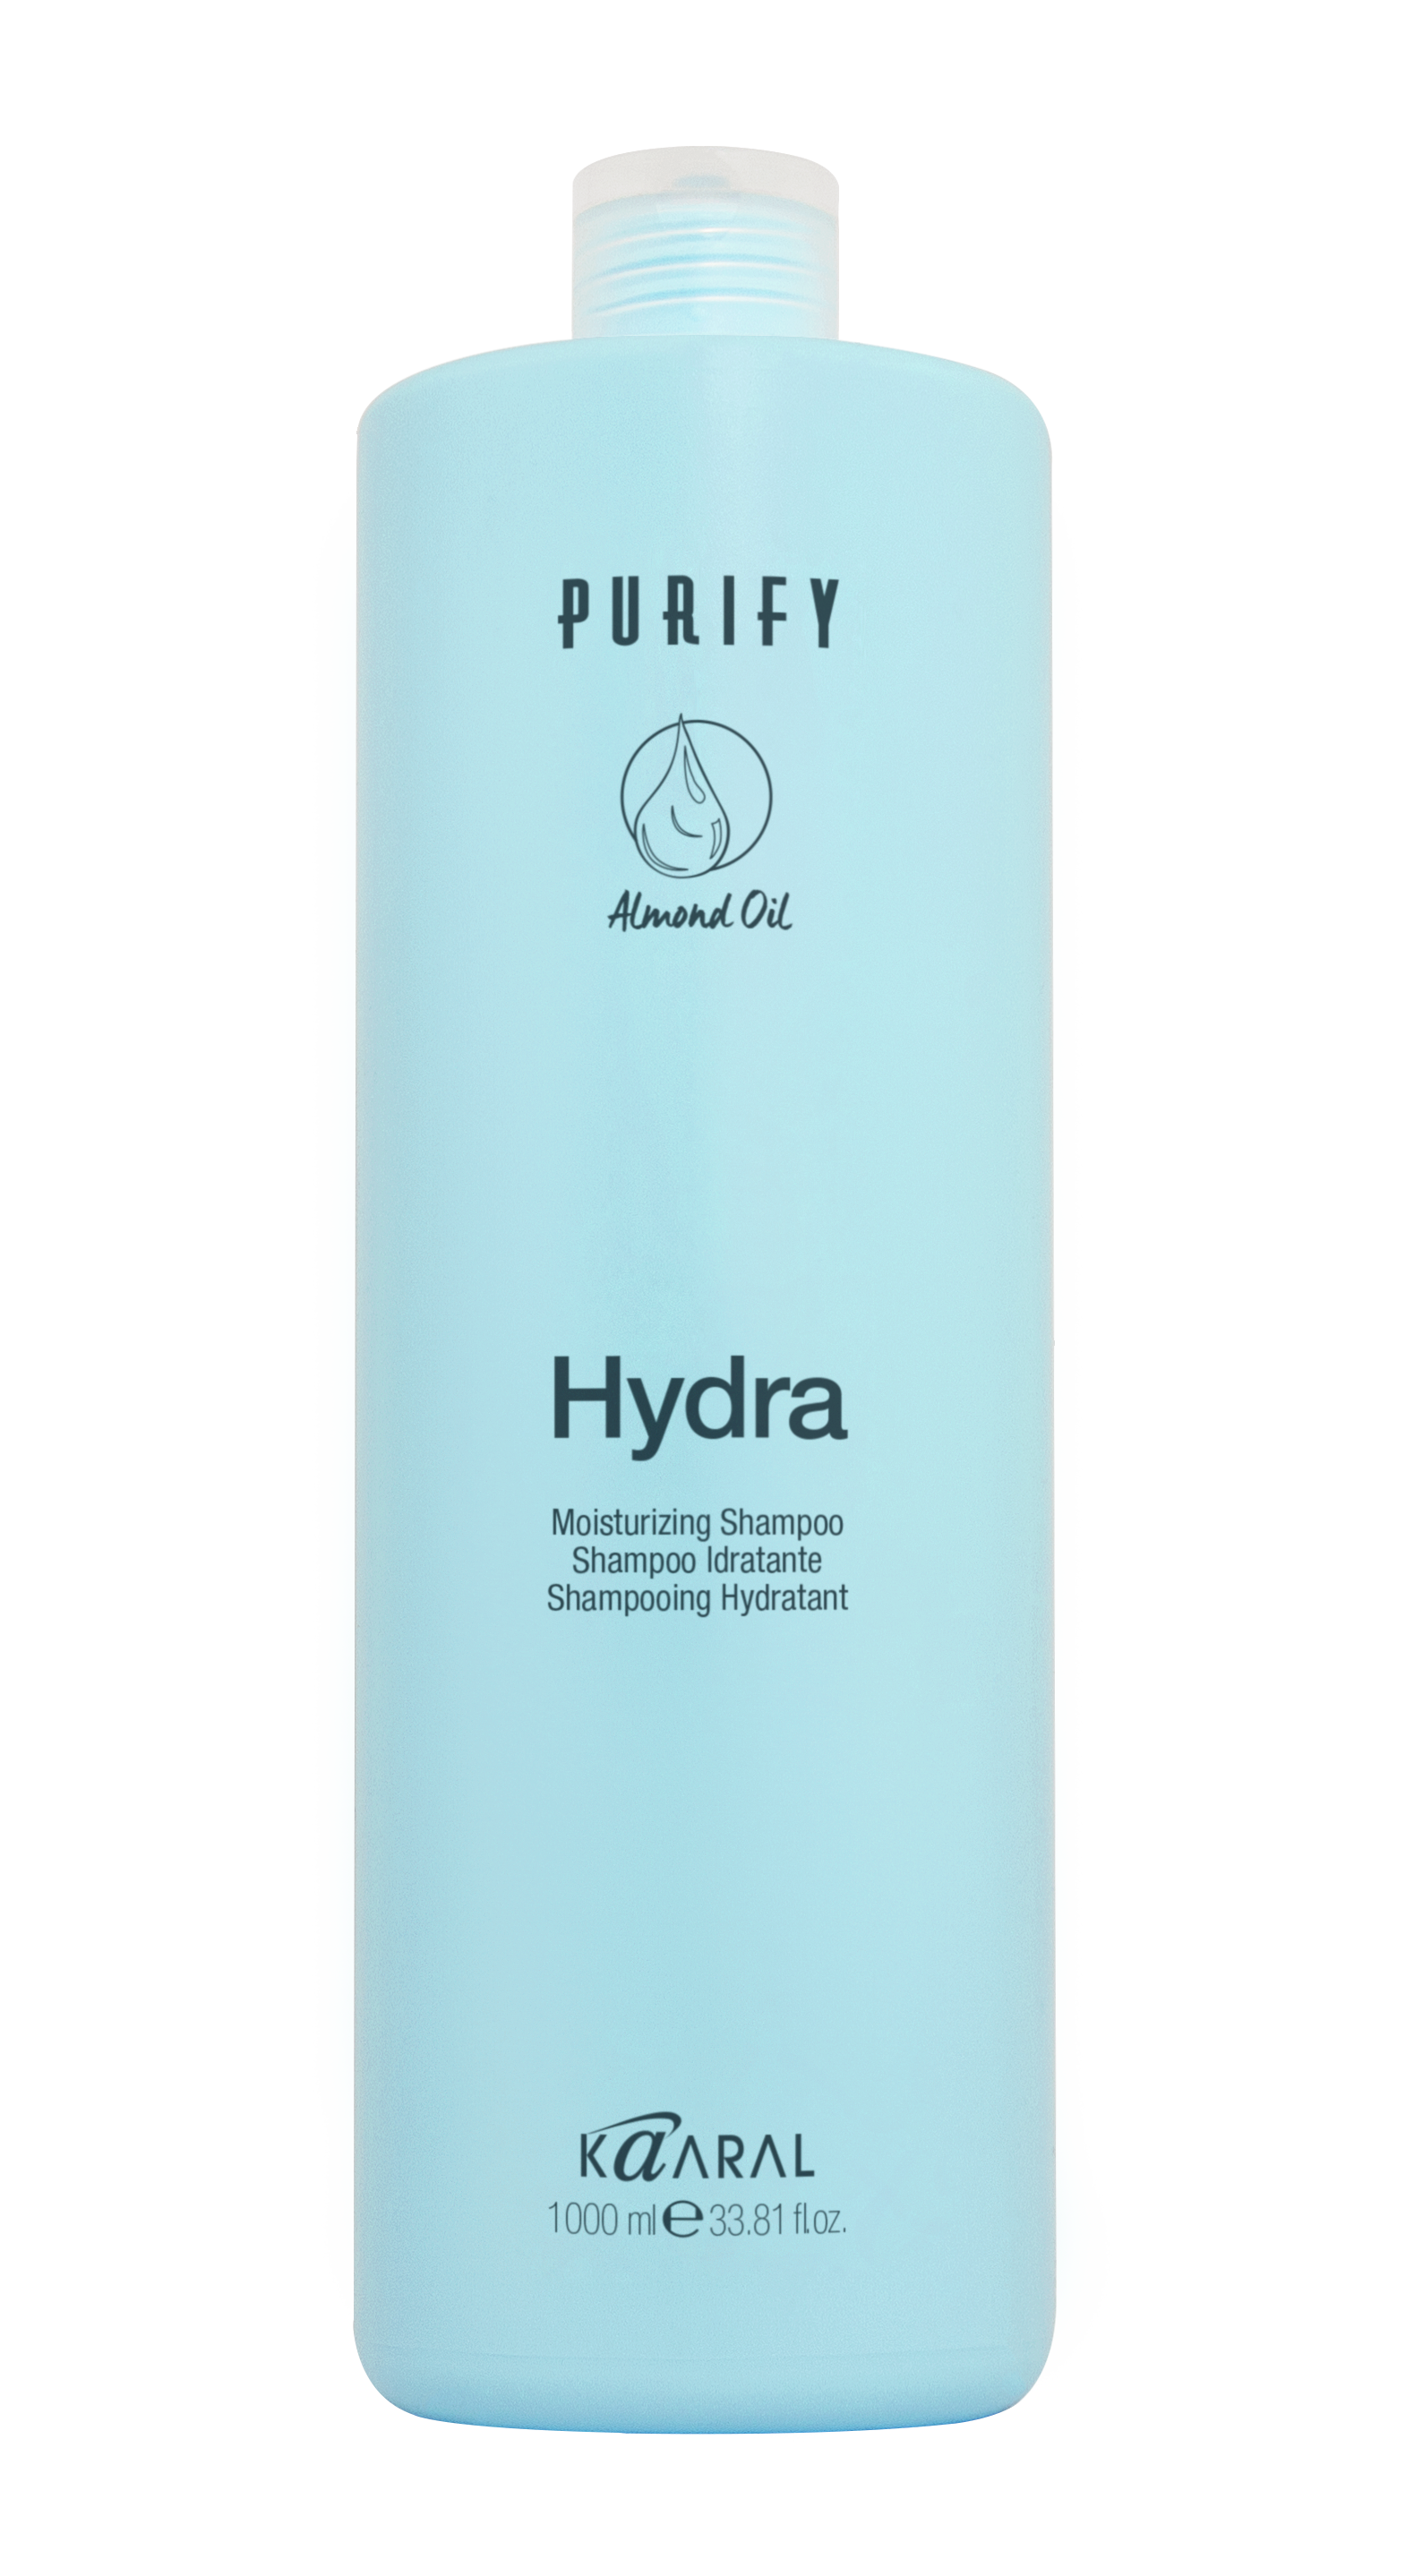 PURIFY Hydra Shampoo by KAARAL